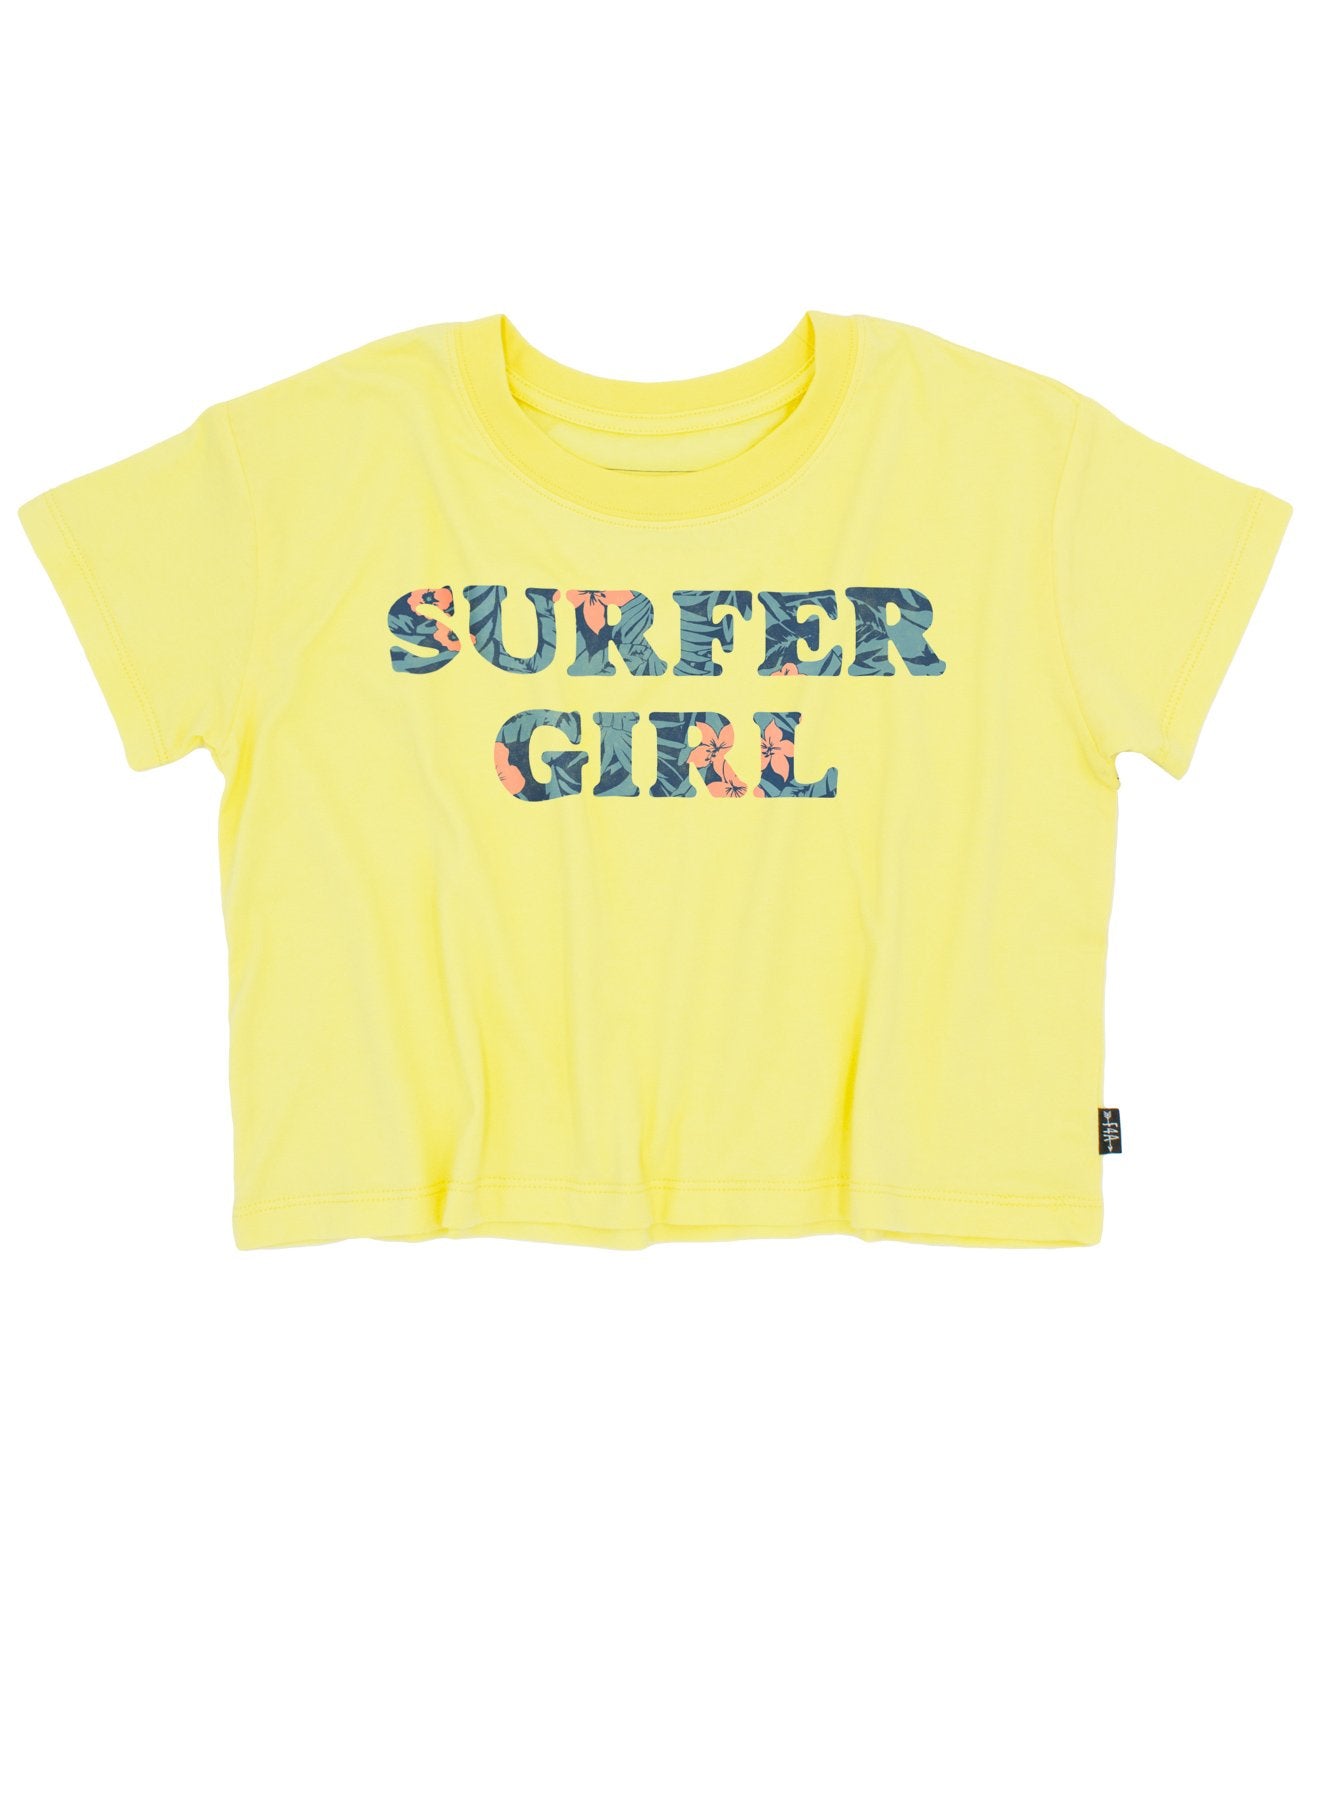 Surfer Girl Crop Tee  - Doodlebug's Children's Boutique